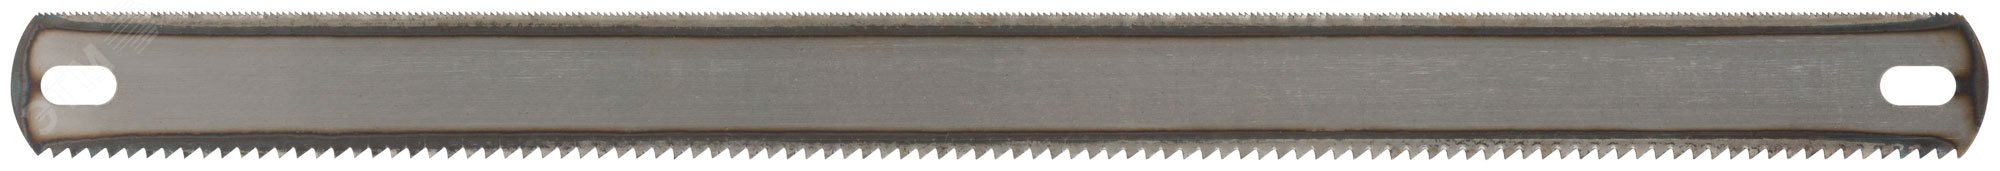 Полотна ножовочные металл/дерево (24 TPI / 8 TPI), каленый зуб, широкие двусторонние, 300х24 мм, 72 шт 40163 FIT - превью